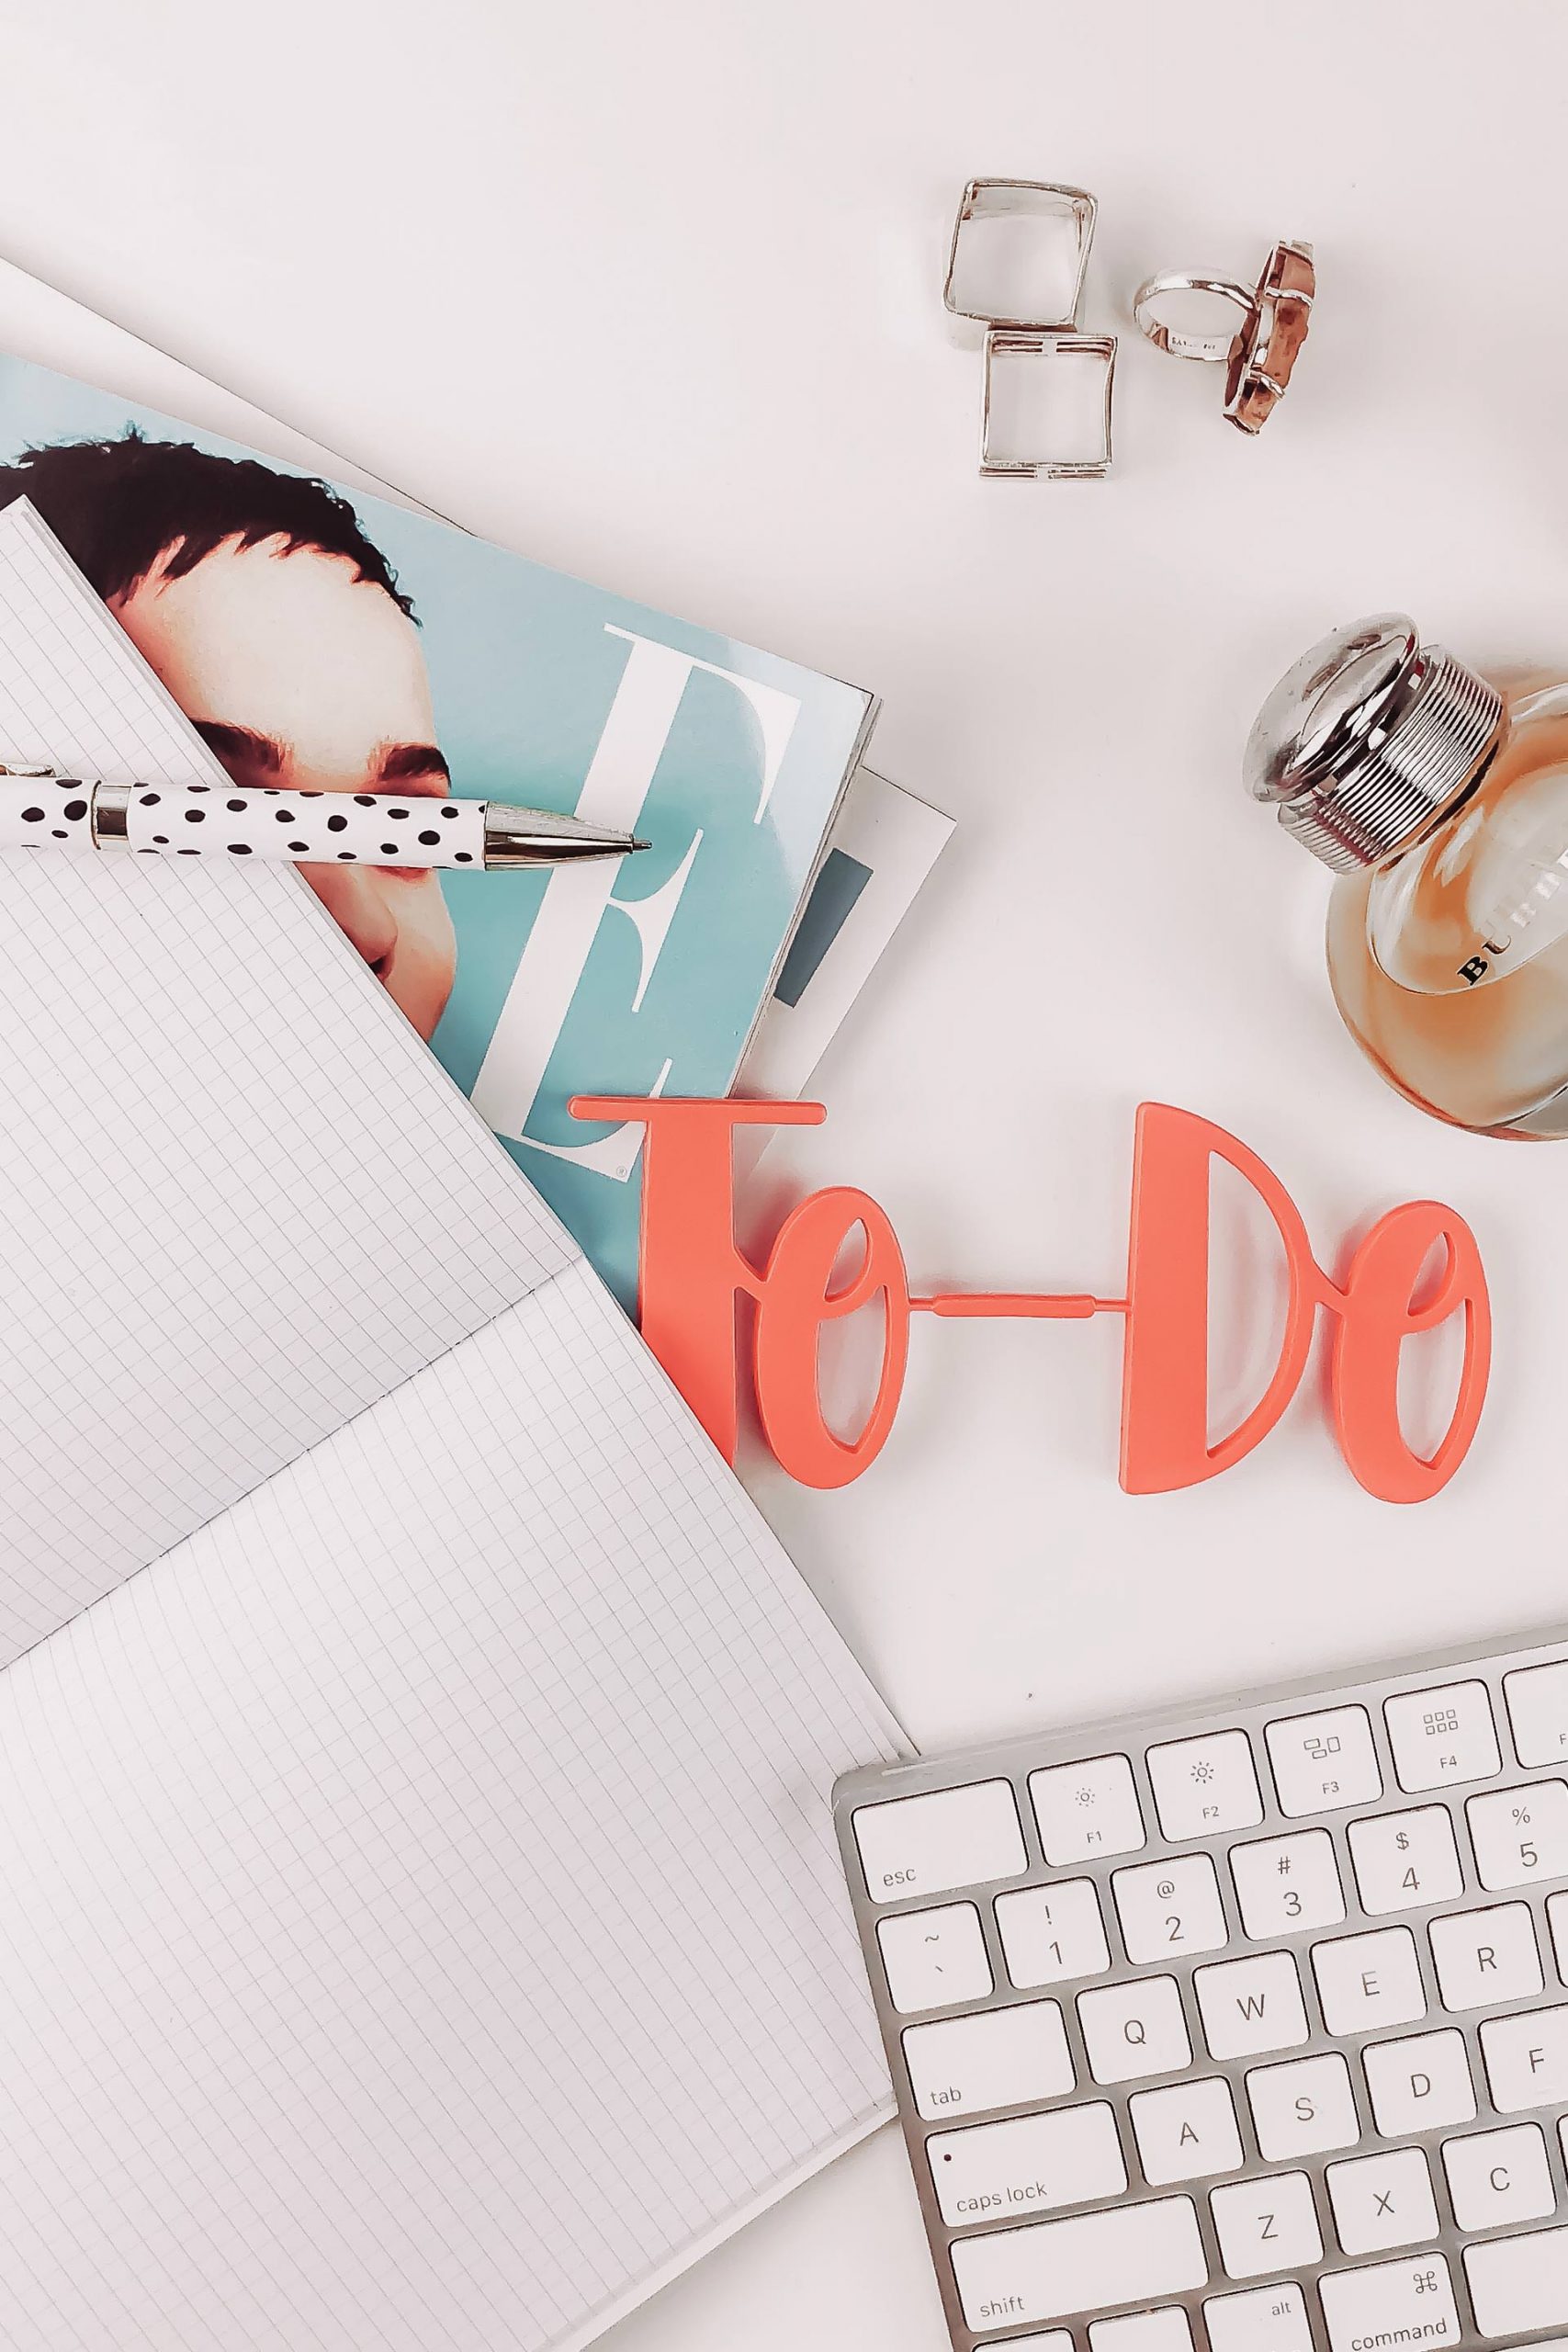 Am Karriere Blog erkläre ich dir, wie du Selbstorganisation lernen und deinen Alltag mit der optimalen To-do-Liste und dem richtigen Zeitmanagement effizient strukturieren kannst. www.whoismocca.com #selbstorganisation #todo